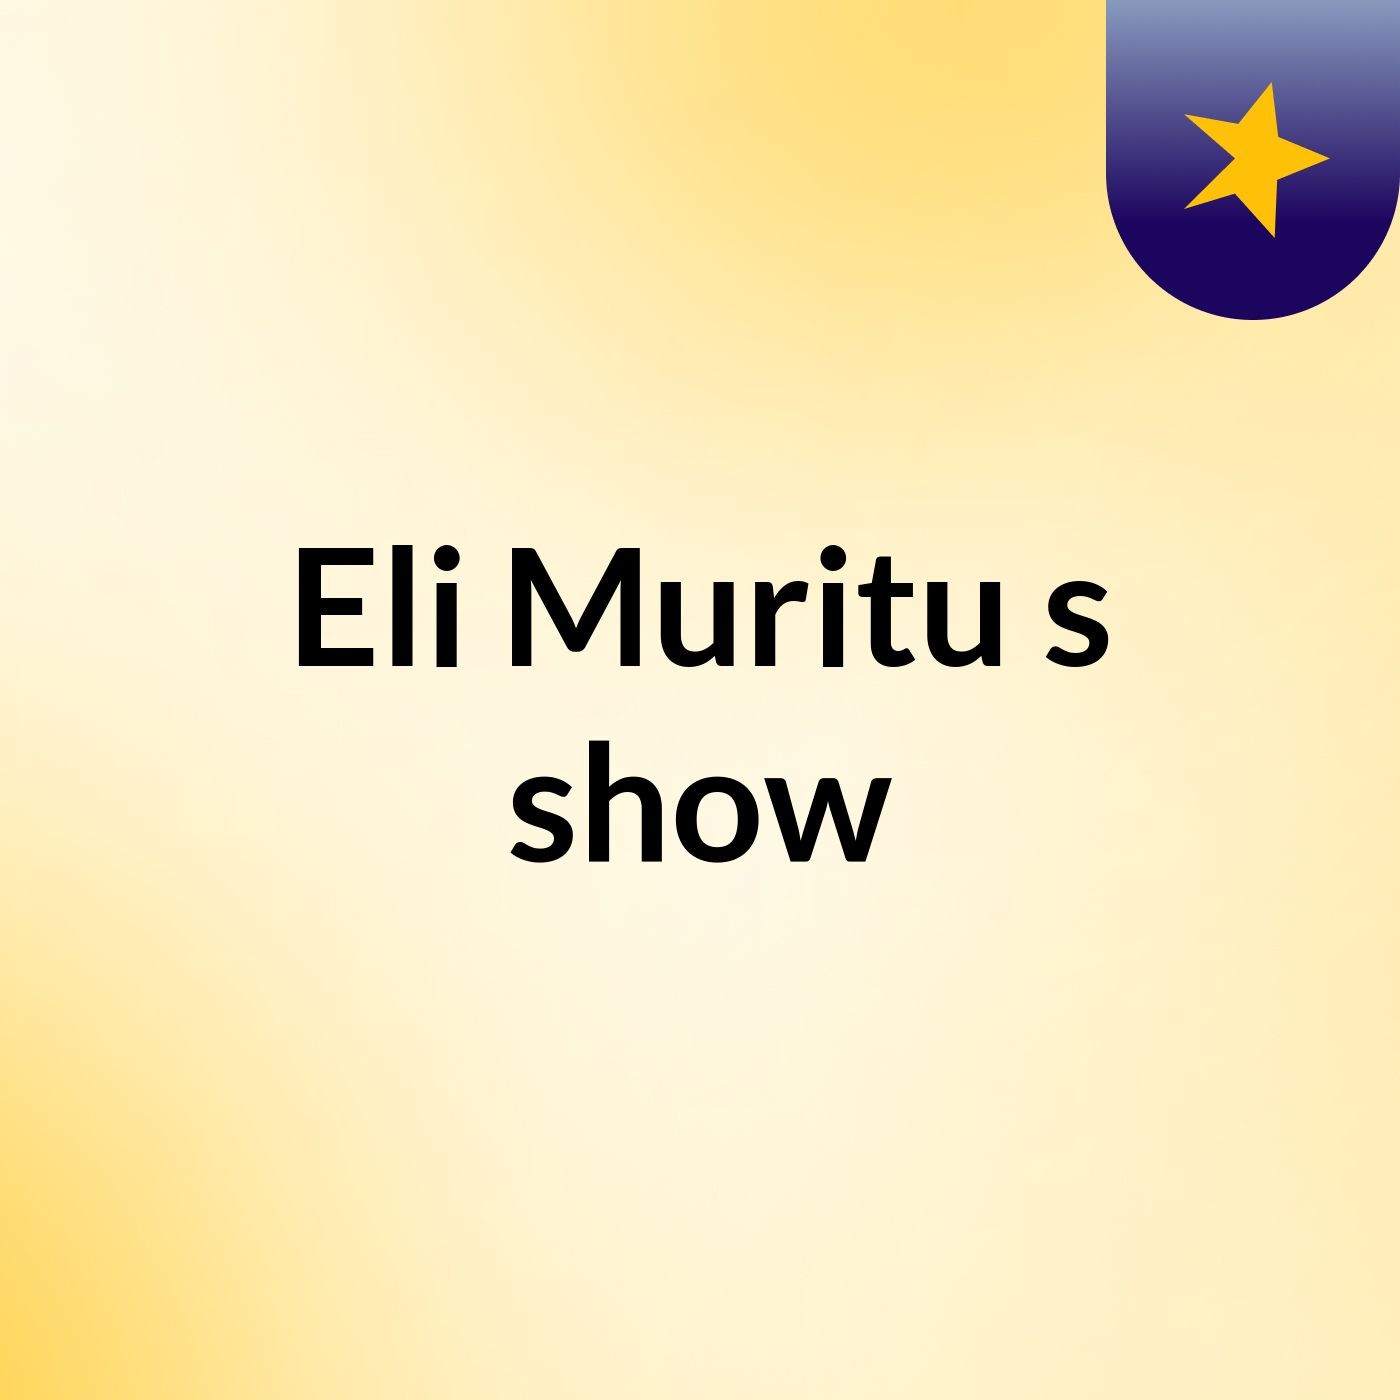 Eli Muritu's show